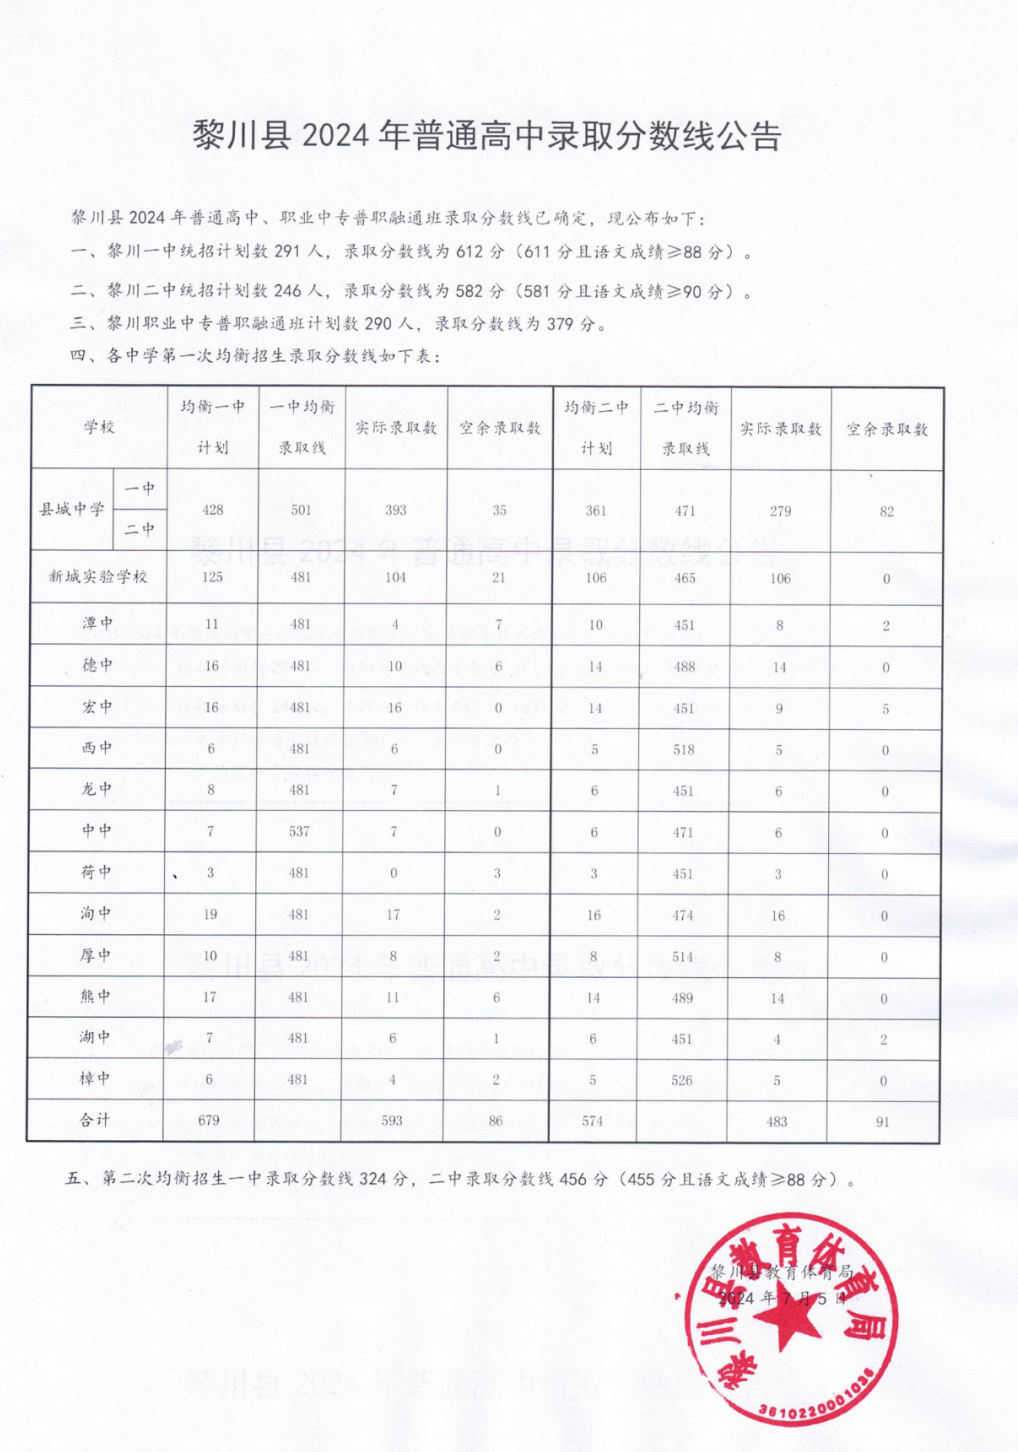 高中招生录取分数线公布 涉及临川区,黎川县,乐安县